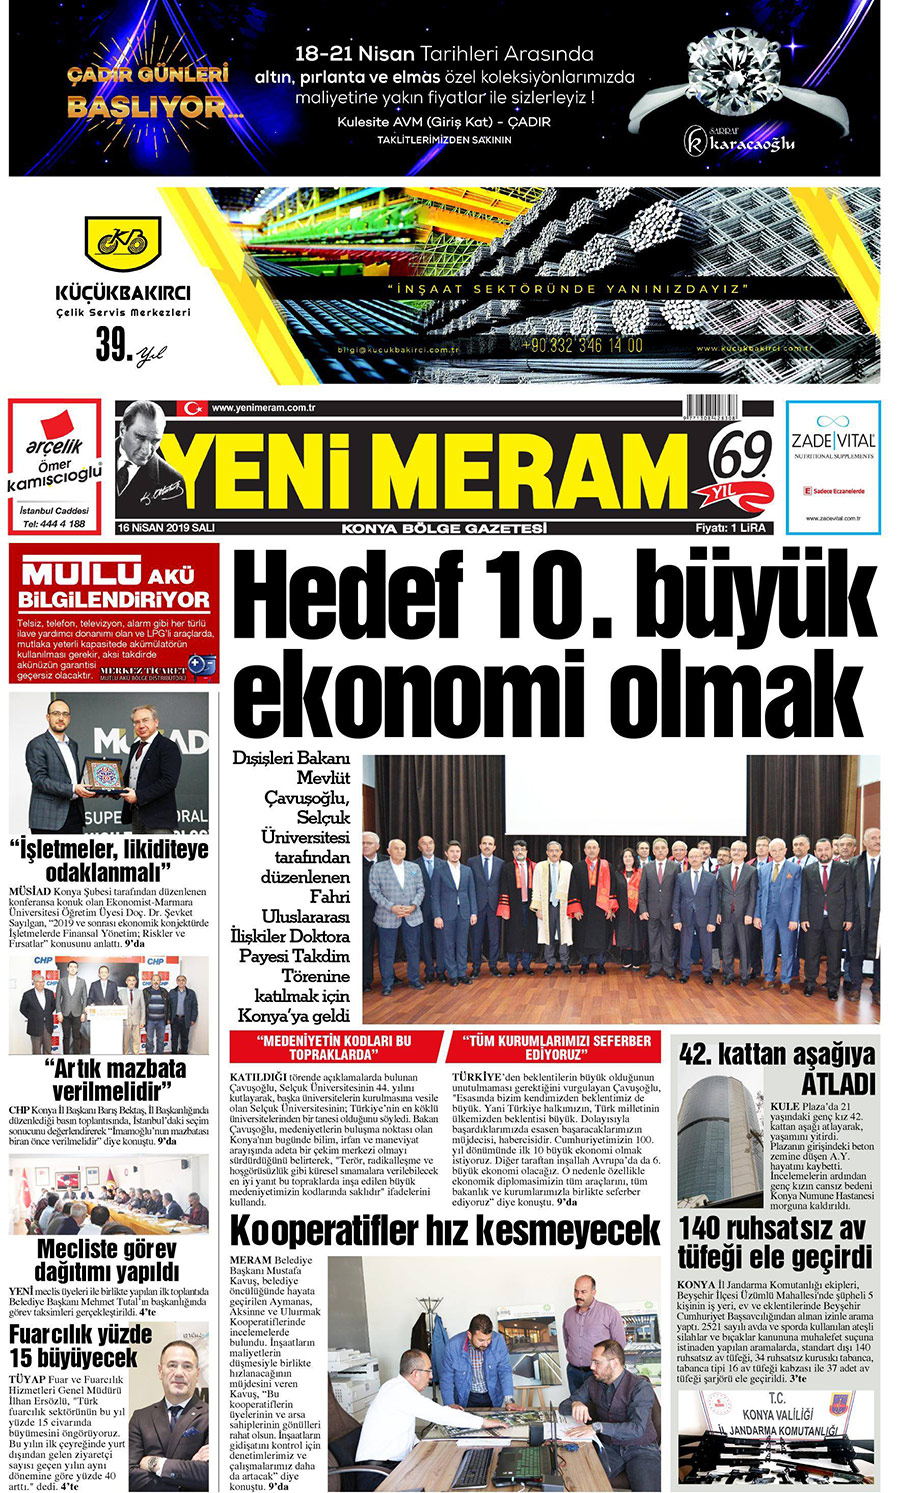 16 Nisan 2019 Yeni Meram Gazetesi